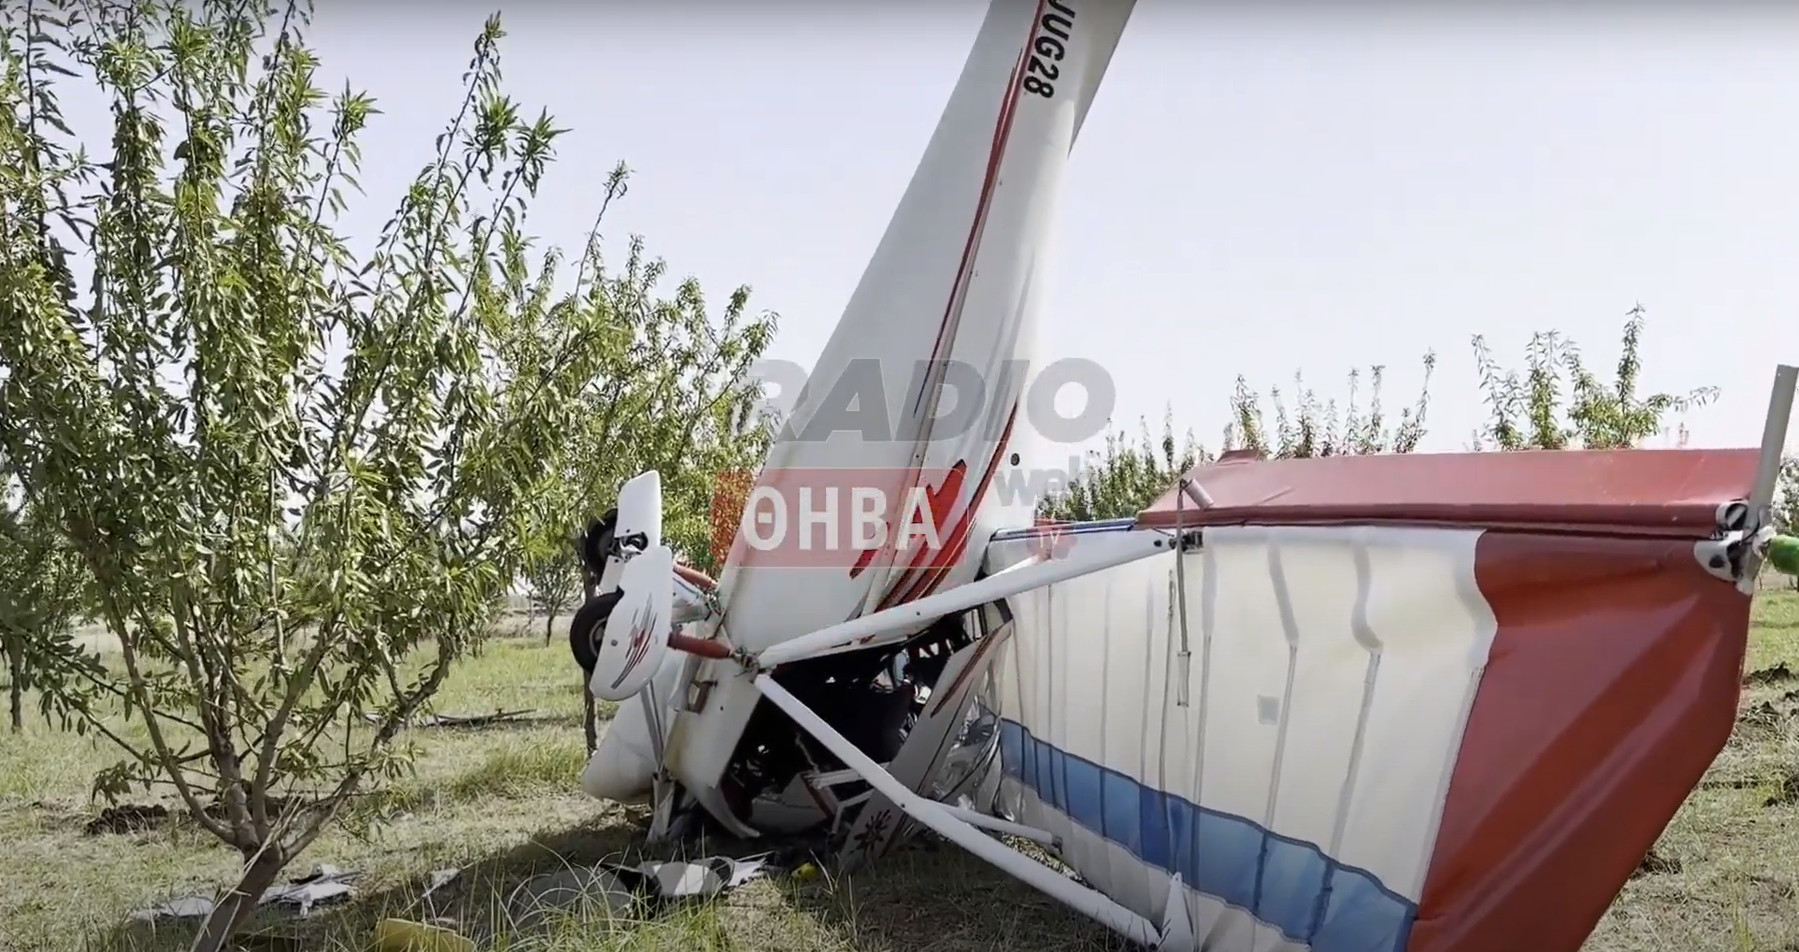 Θήβα: Τραγωδία με πτώση αεροσκάφους - Νεκρός ο πιλότος